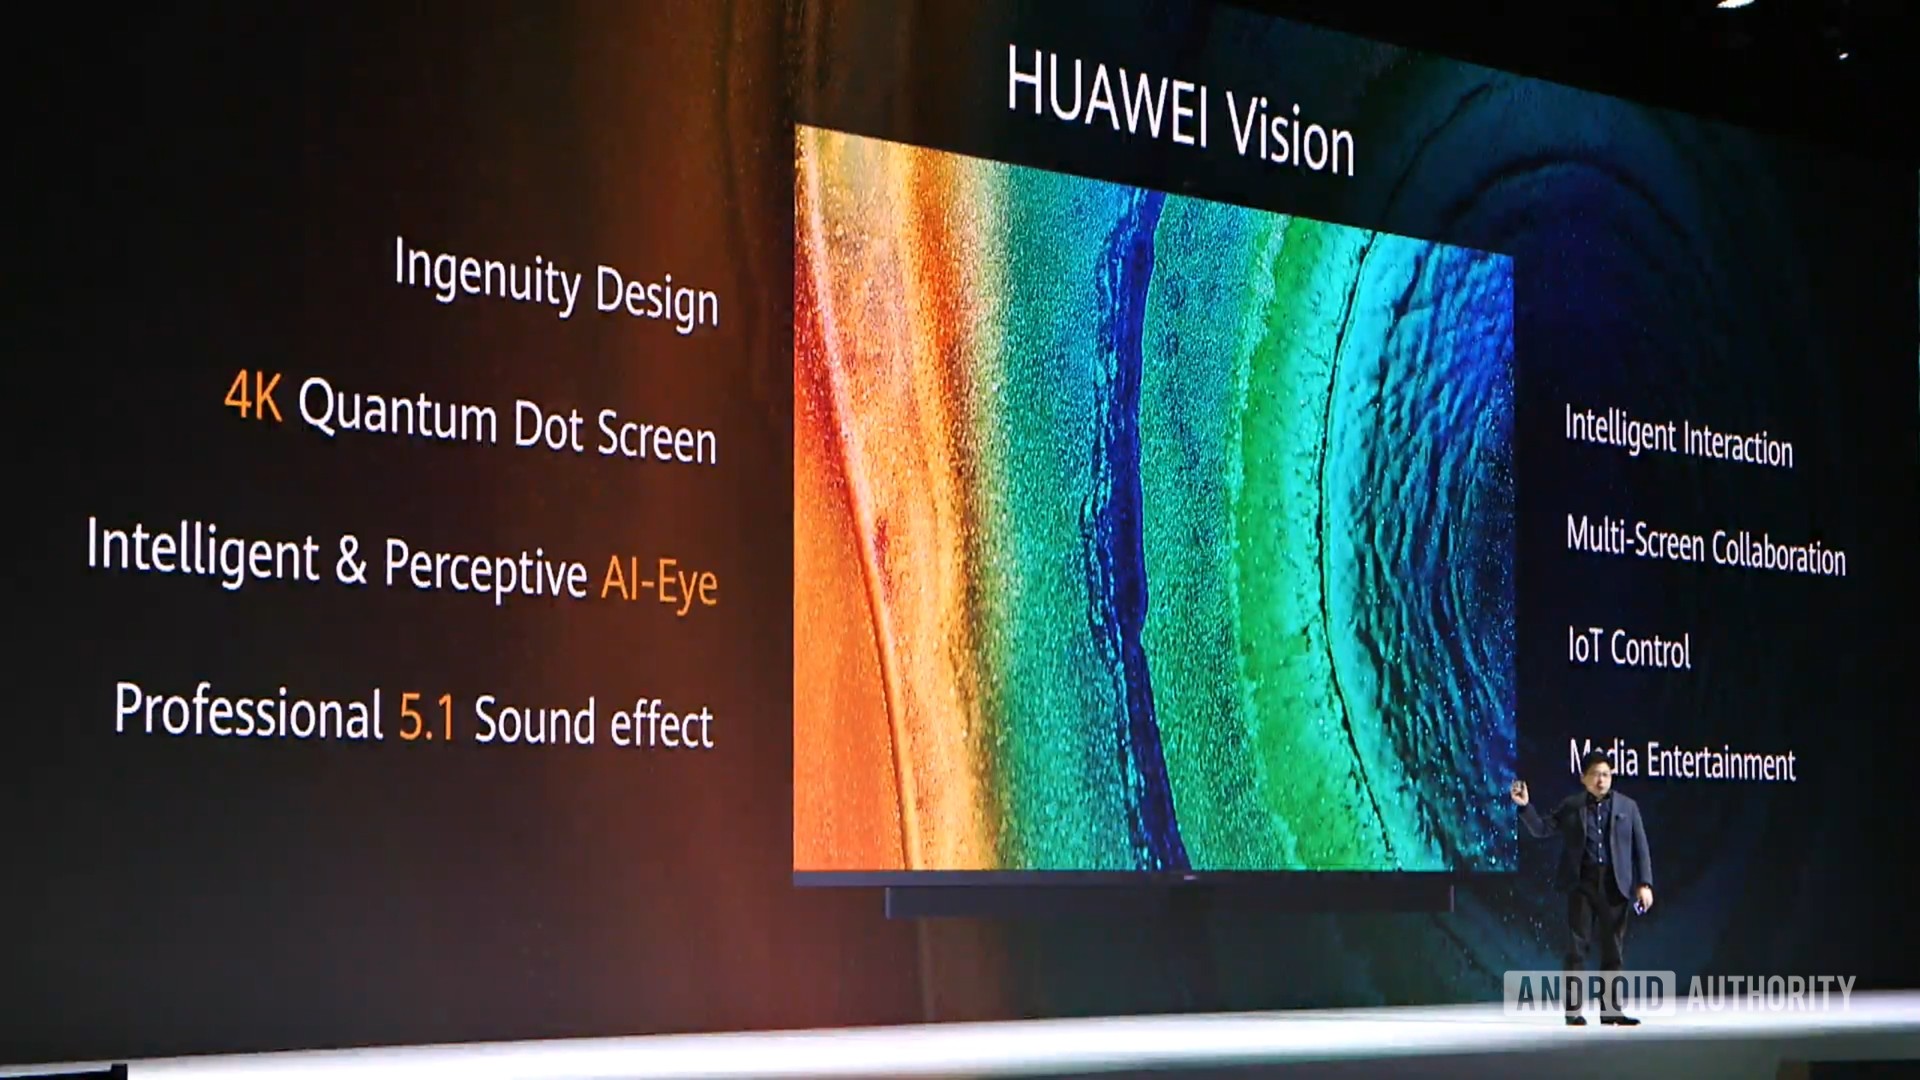 Huawei Vision TV